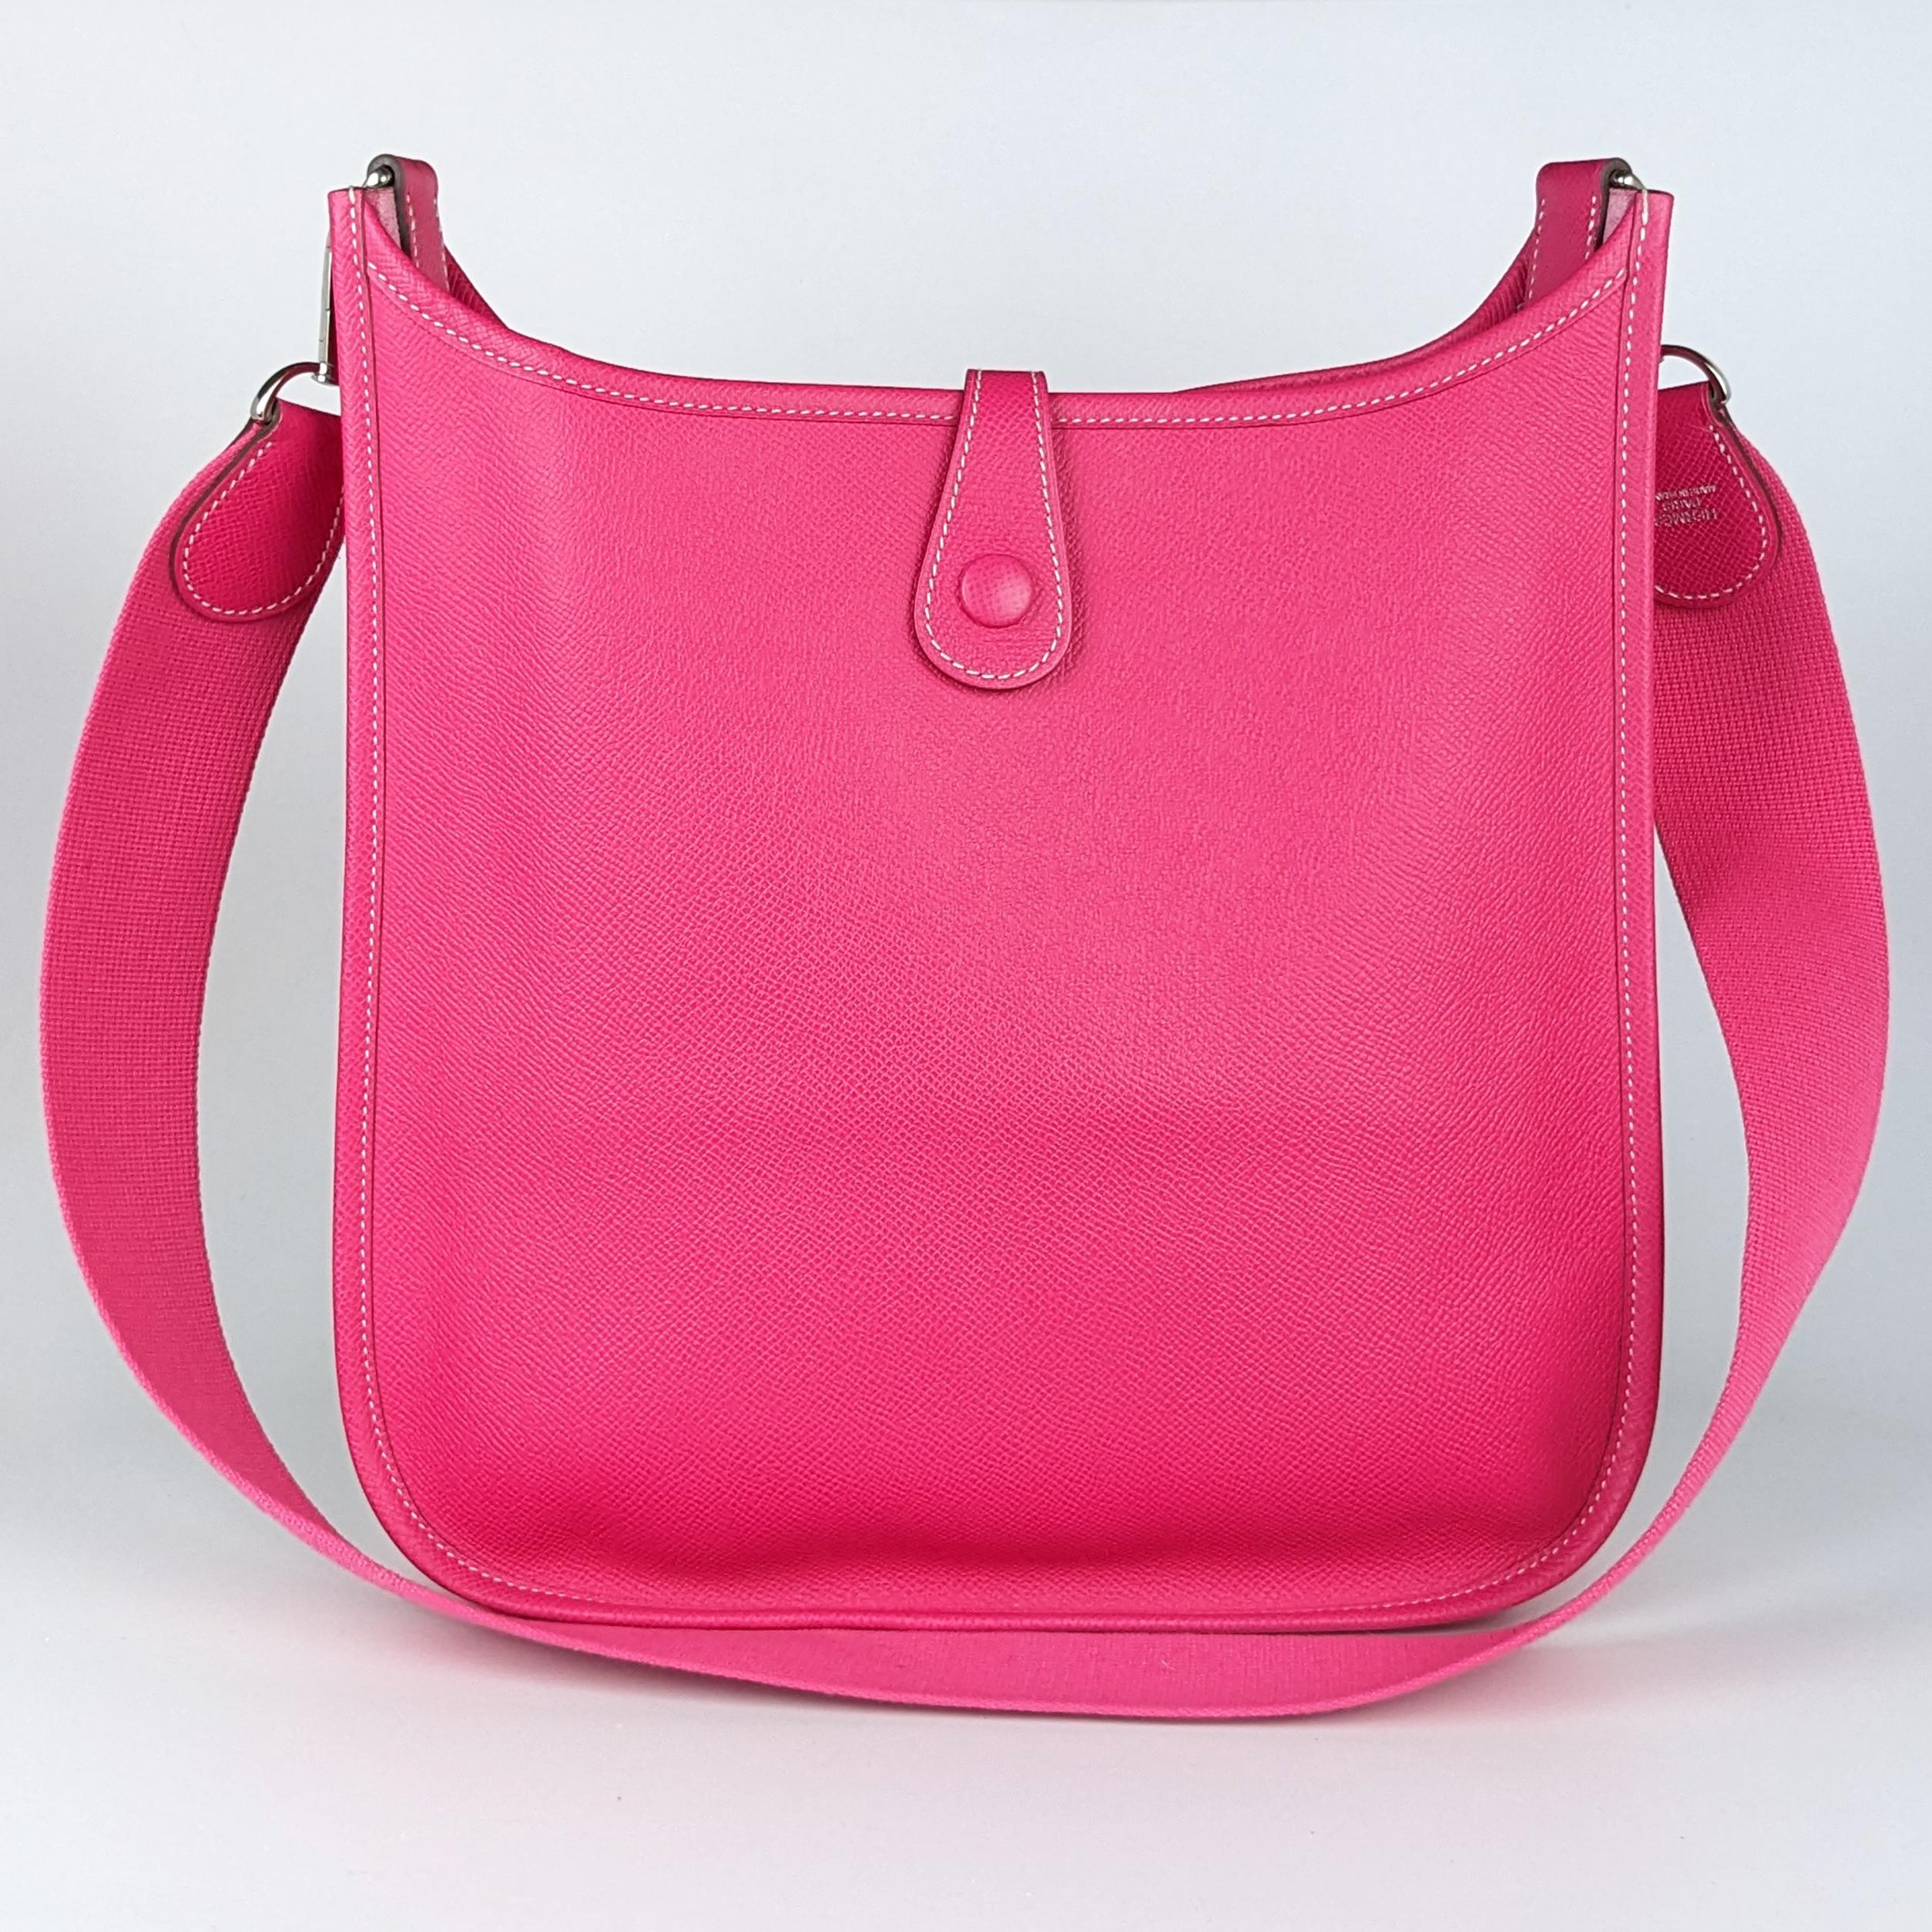 Women's Hermes Evelyne I Pm Epsom Hot Pink Leather Crossbody Bag